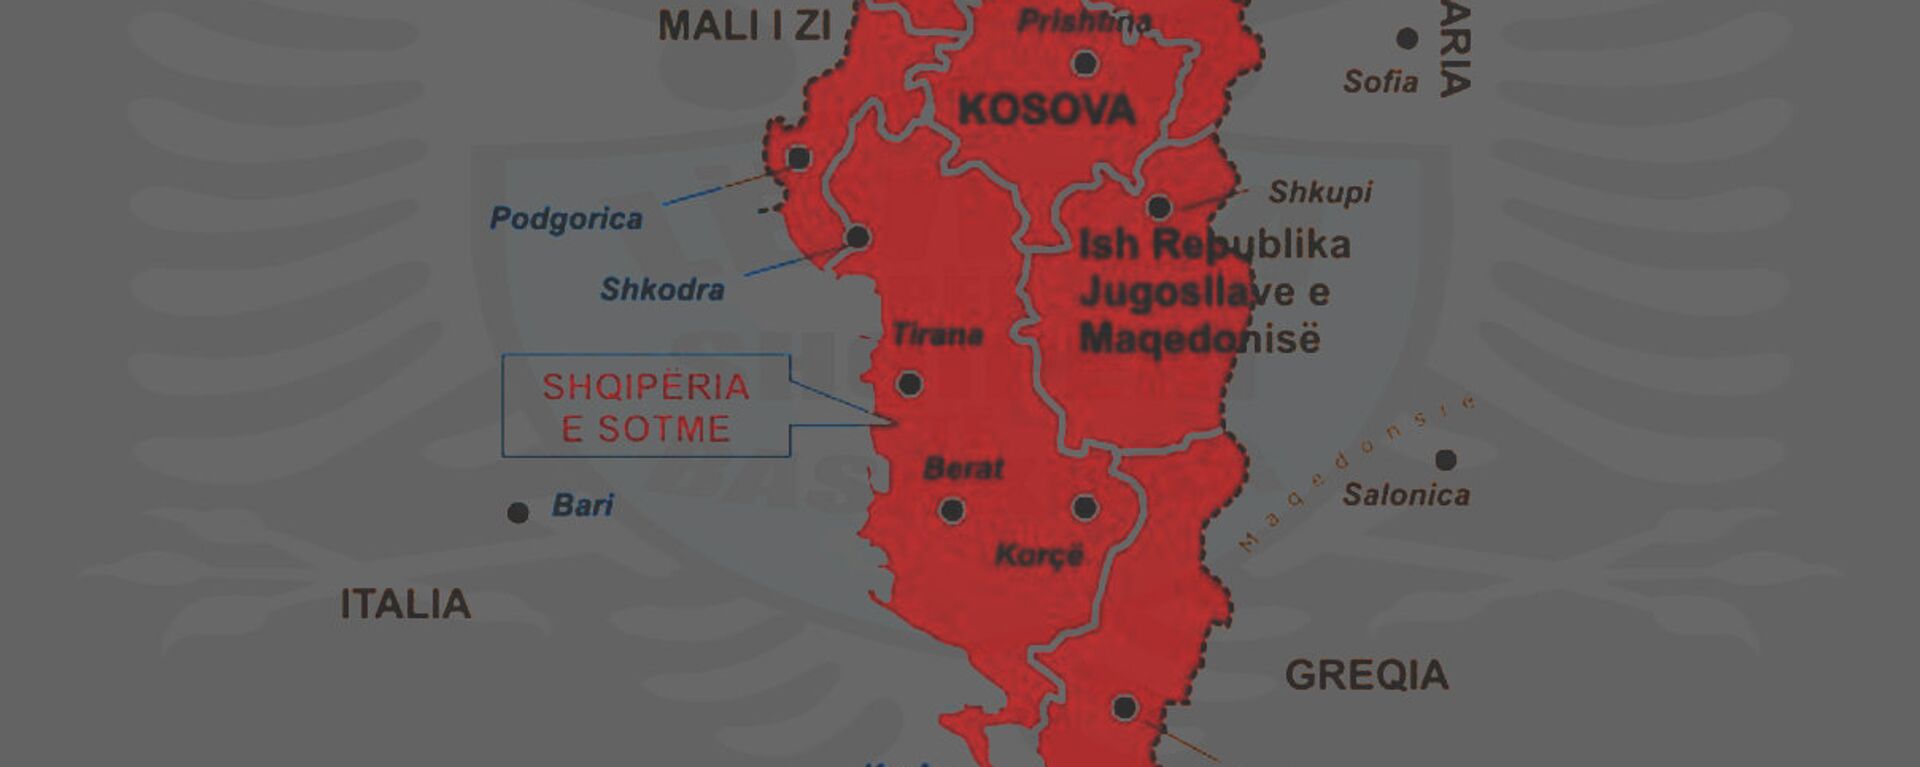 Karta Velike Albanije - Sputnik Srbija, 1920, 20.05.2019